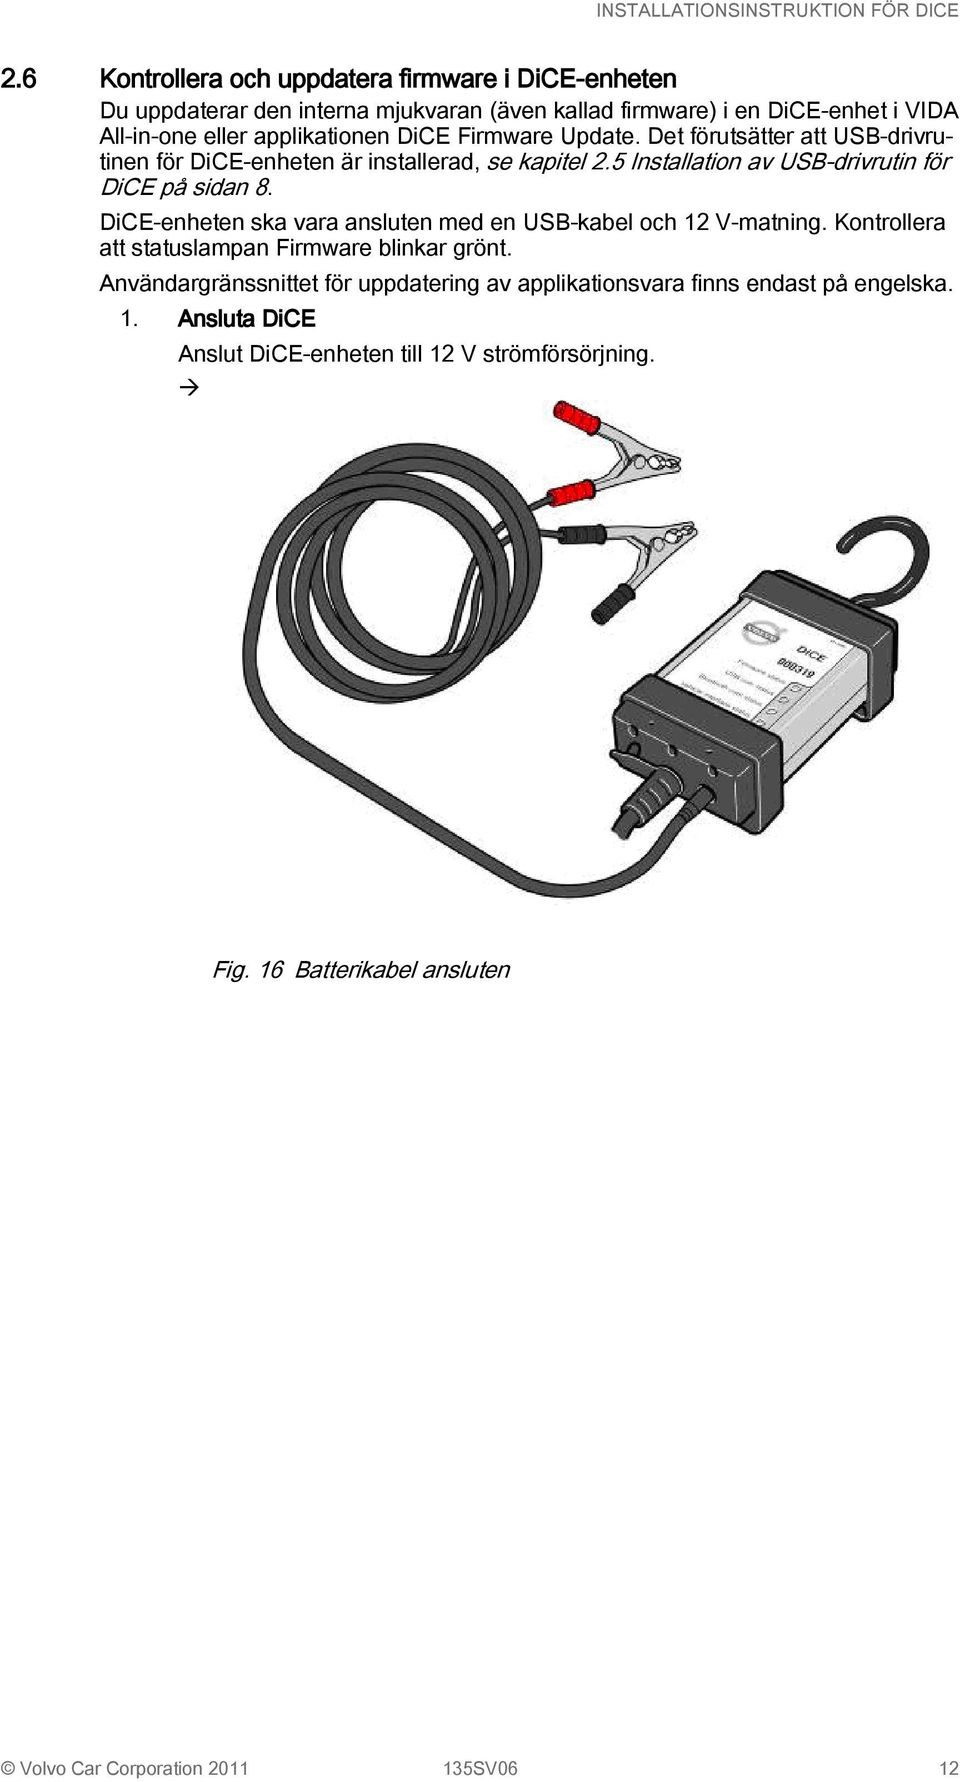 5 Installation av USB-drivrutin för DiCE på sidan 8. DiCE-enheten ska vara ansluten med en USB-kabel och 12 V-matning.